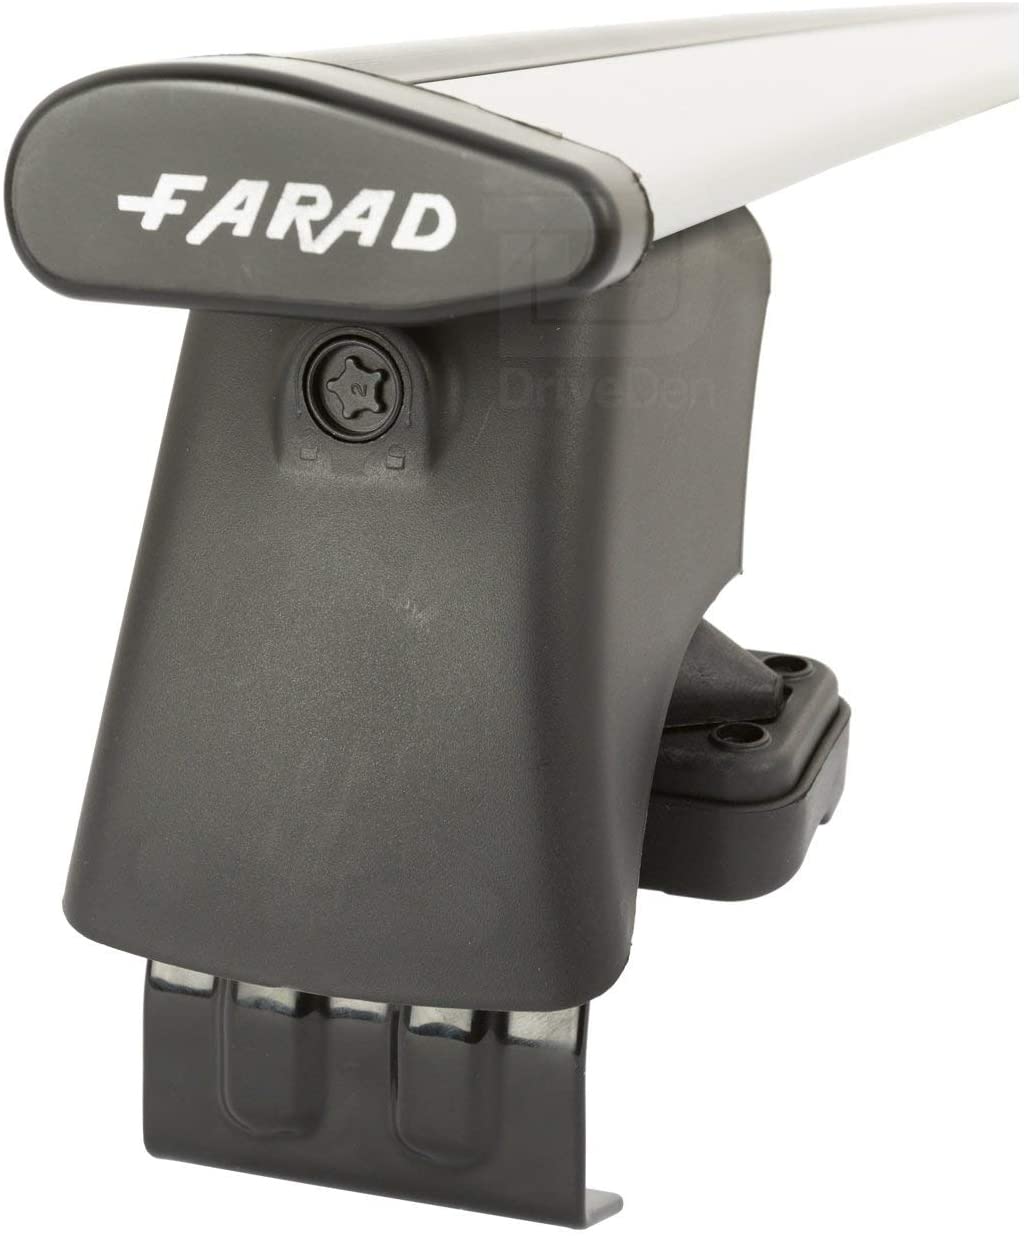 FARAD-Kit H2 per barre portatutto - Mazda Cx-30 2019> (senza corrimano)